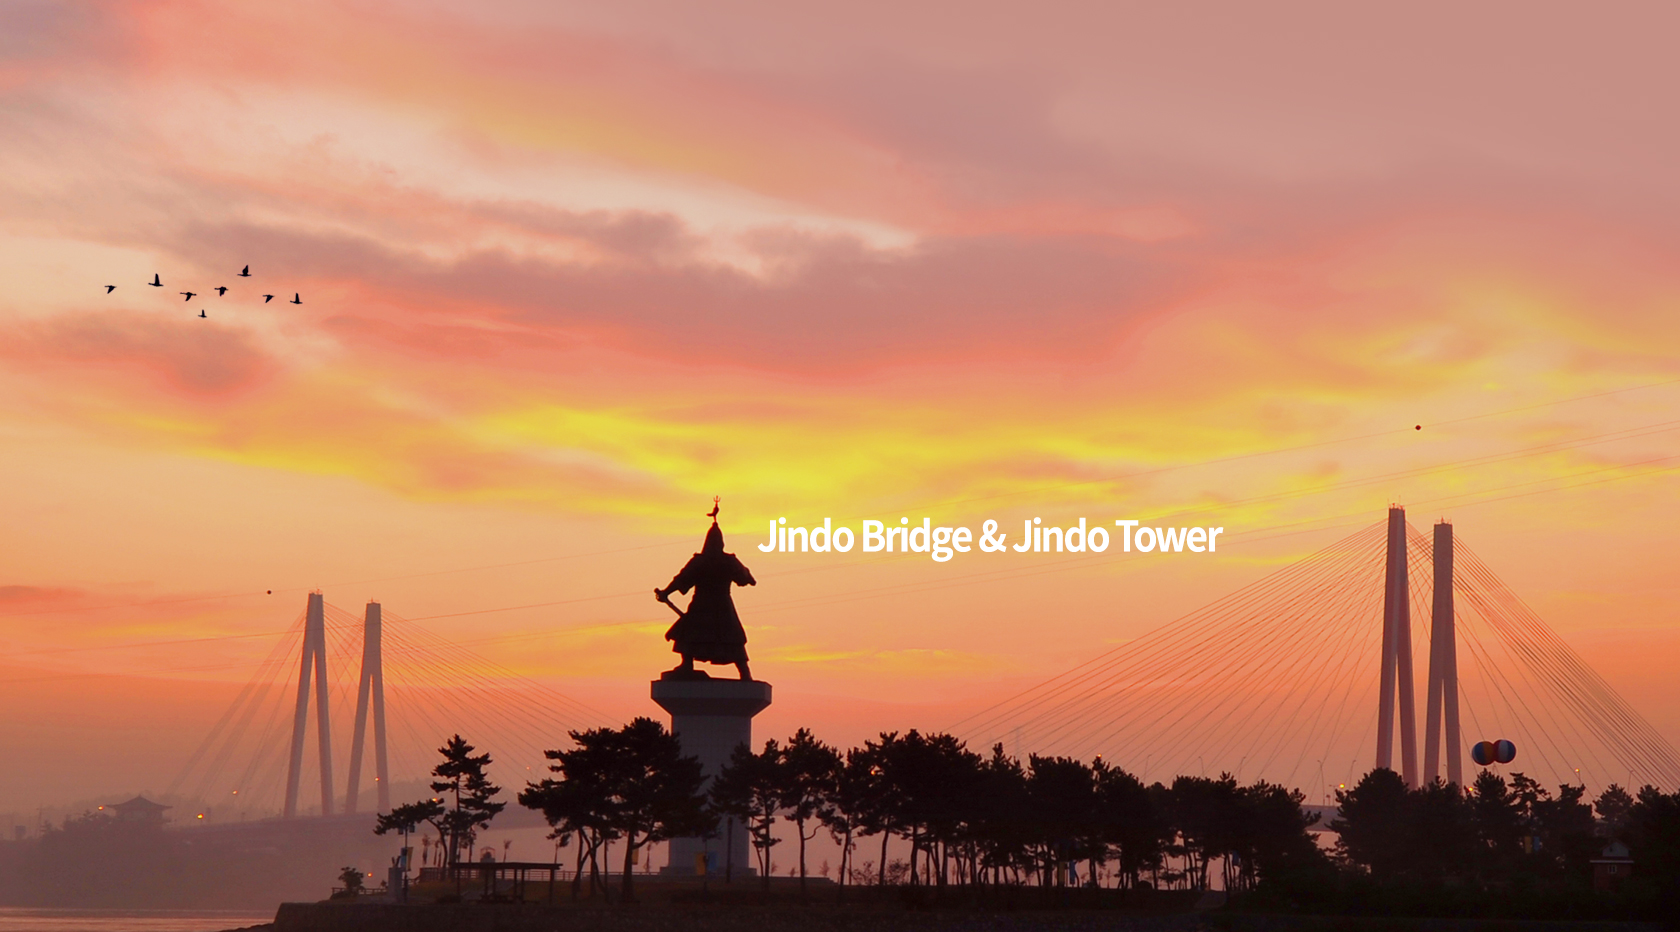 Jindo Bridge & Jindo Tower